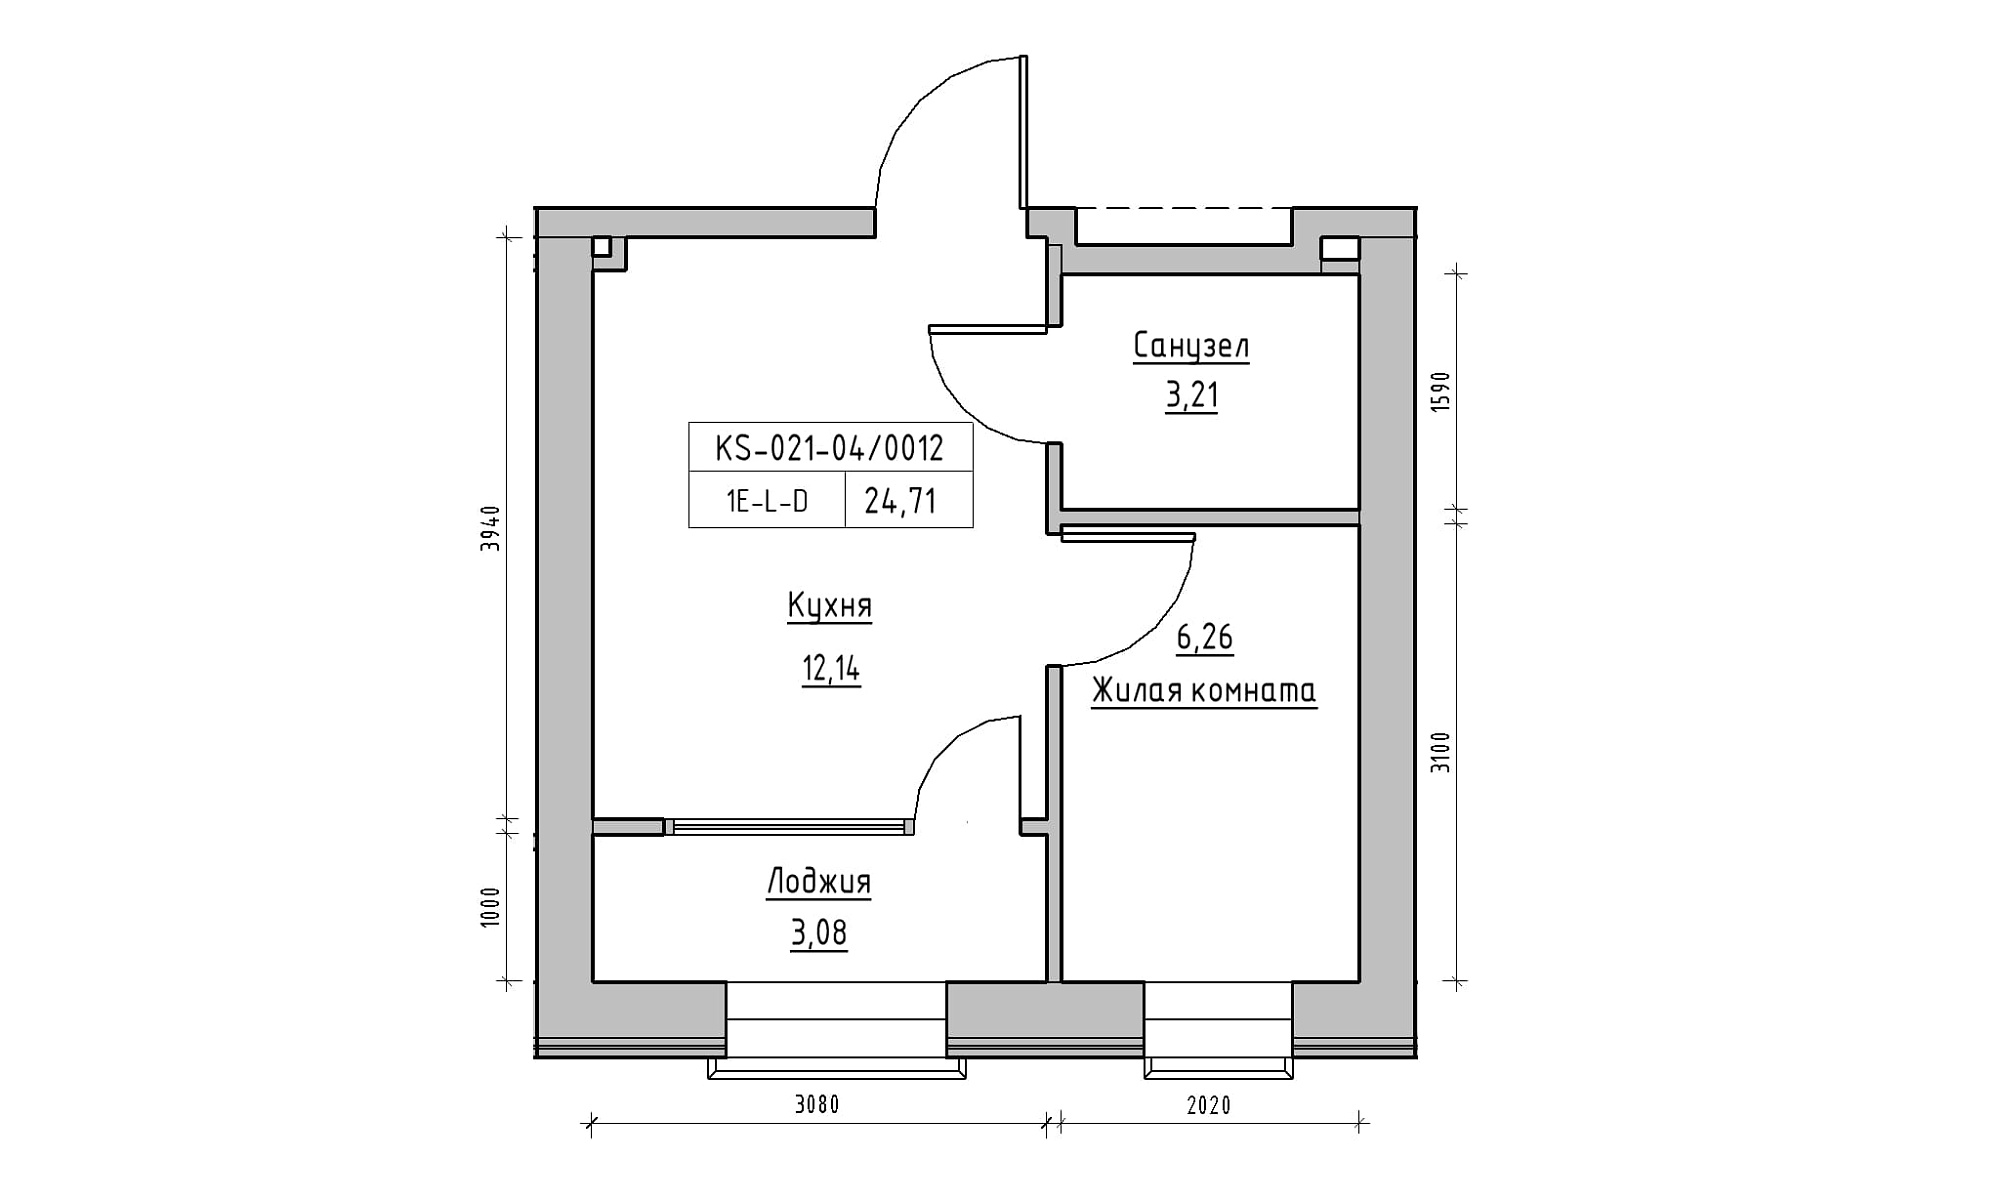 Планировка 1-к квартира площей 24.71м2, KS-021-04/0012.